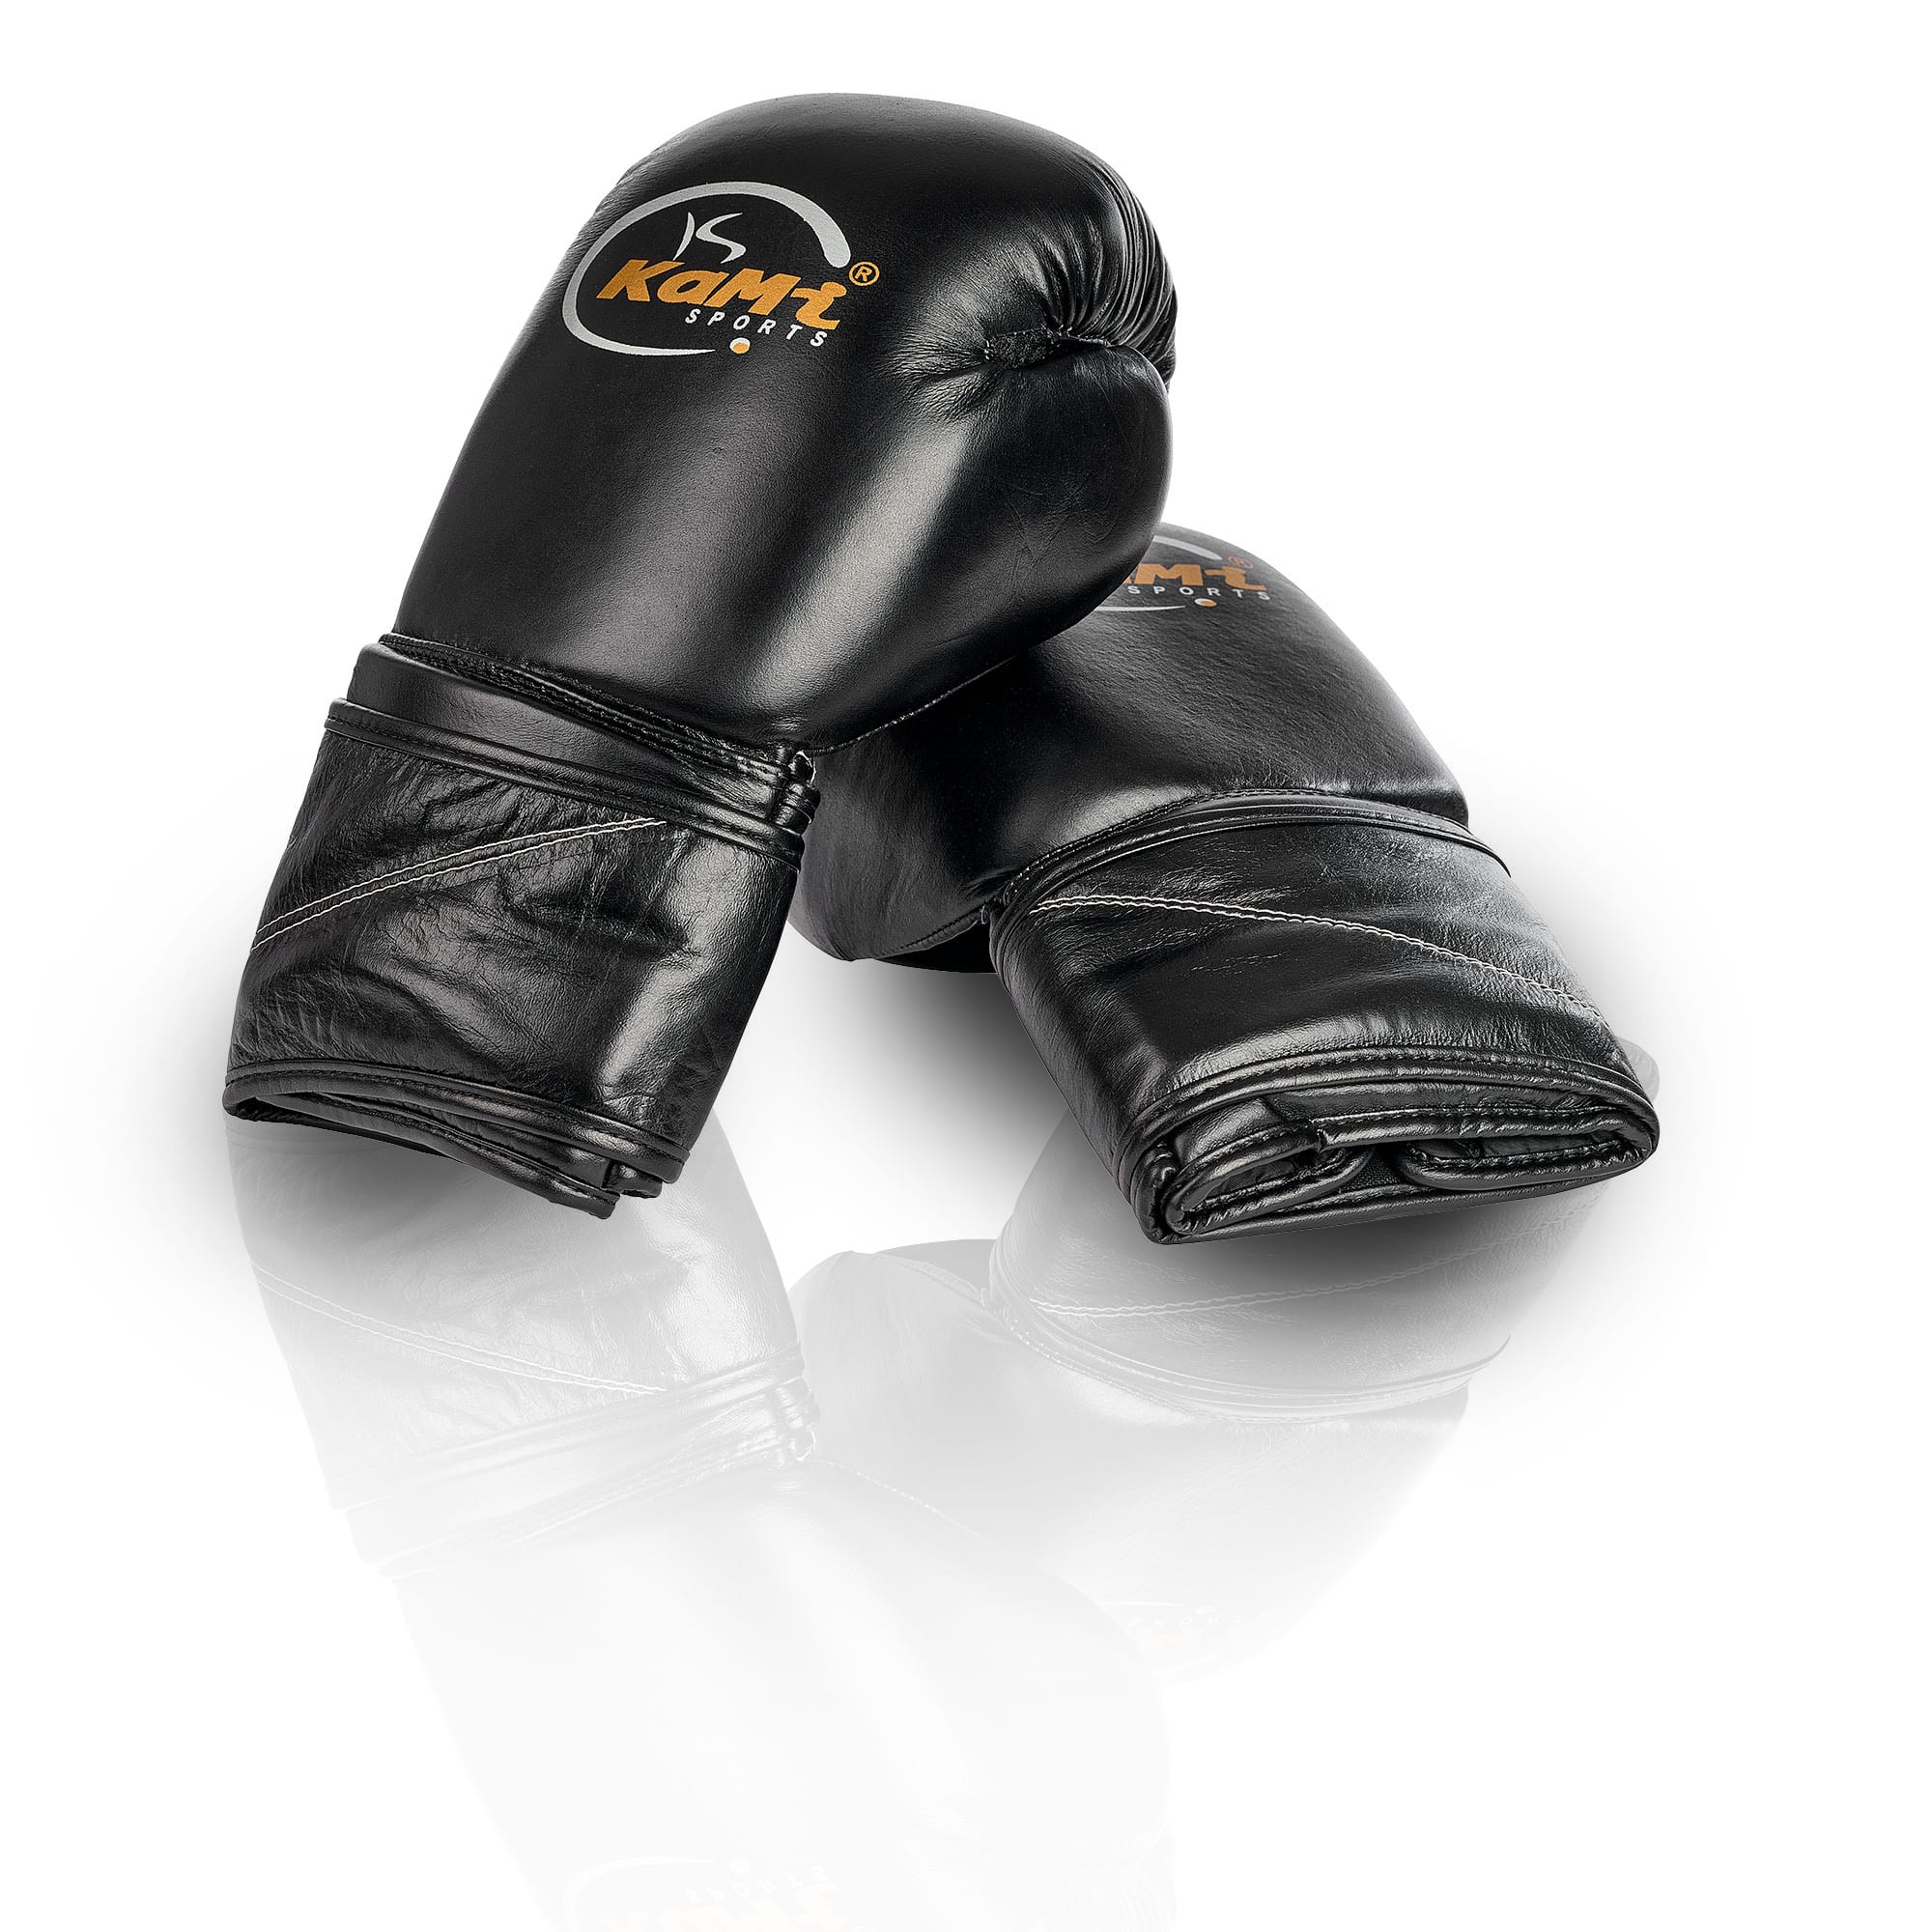 Professionelle Leder-Boxhandschuhe, entwickelt mit Box-Experten, für Training und Sparring, atmungsaktiv und komfortabel, geeignet für alle Kampfsportarten 